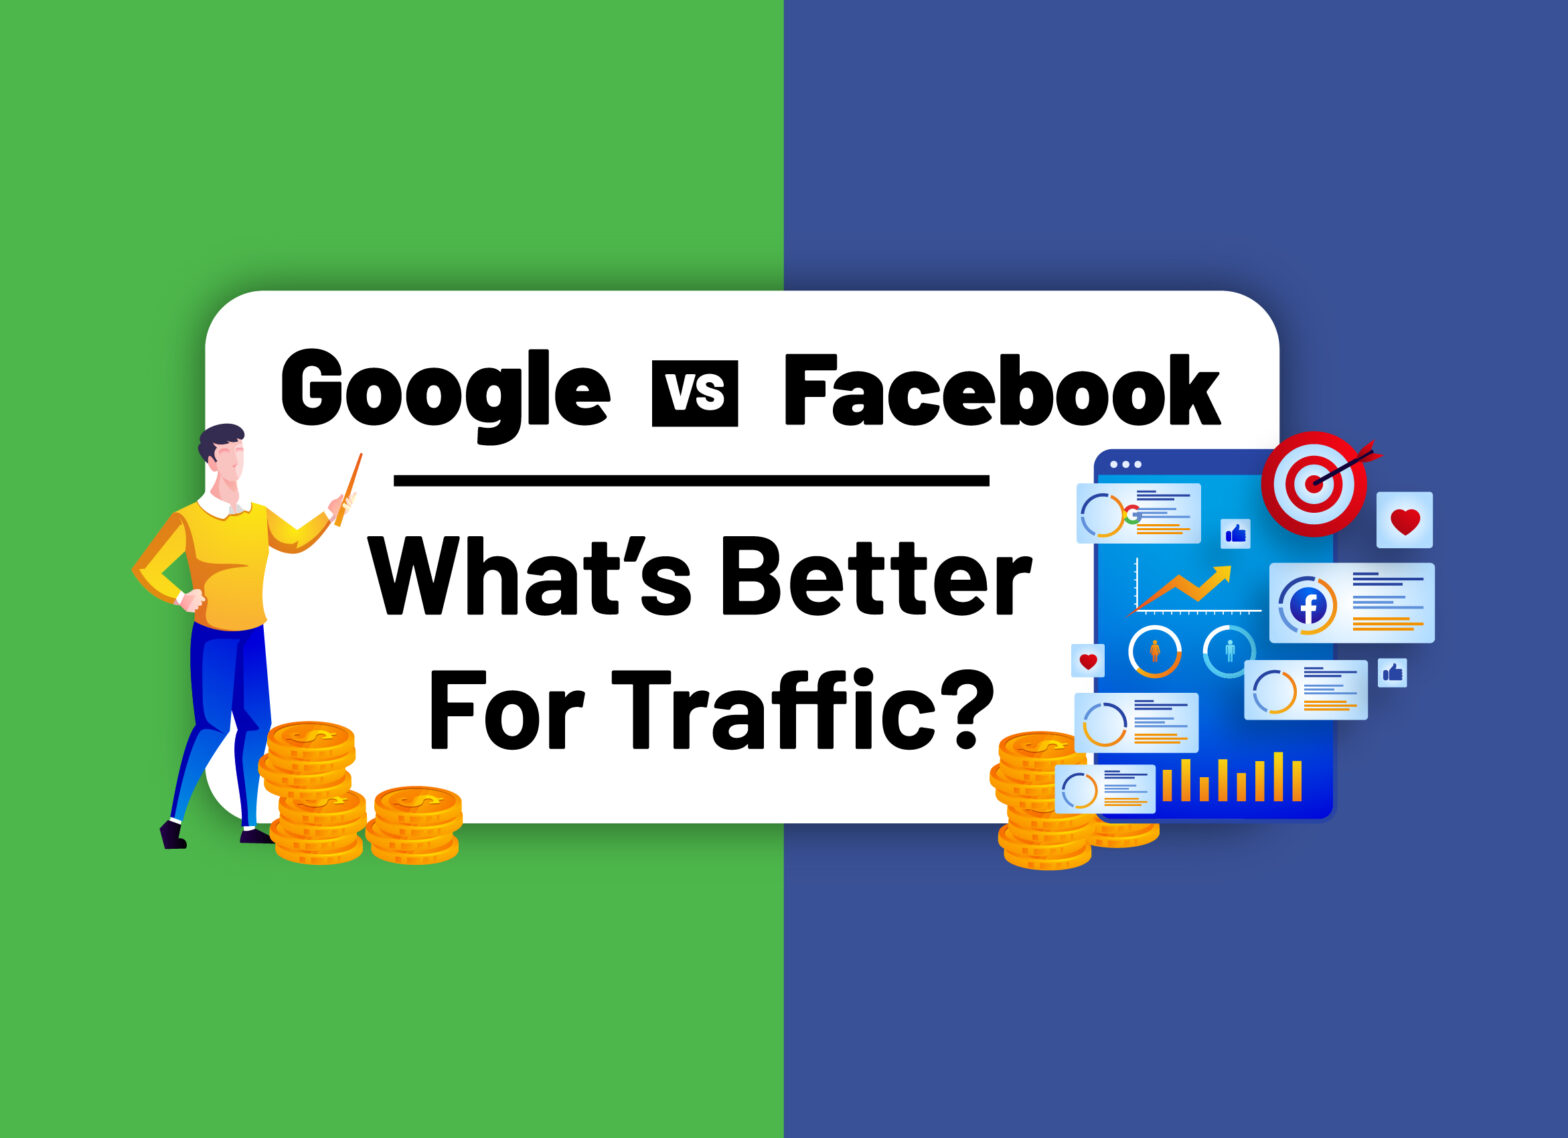 Google vs Facebook What’s Better For Traffic?